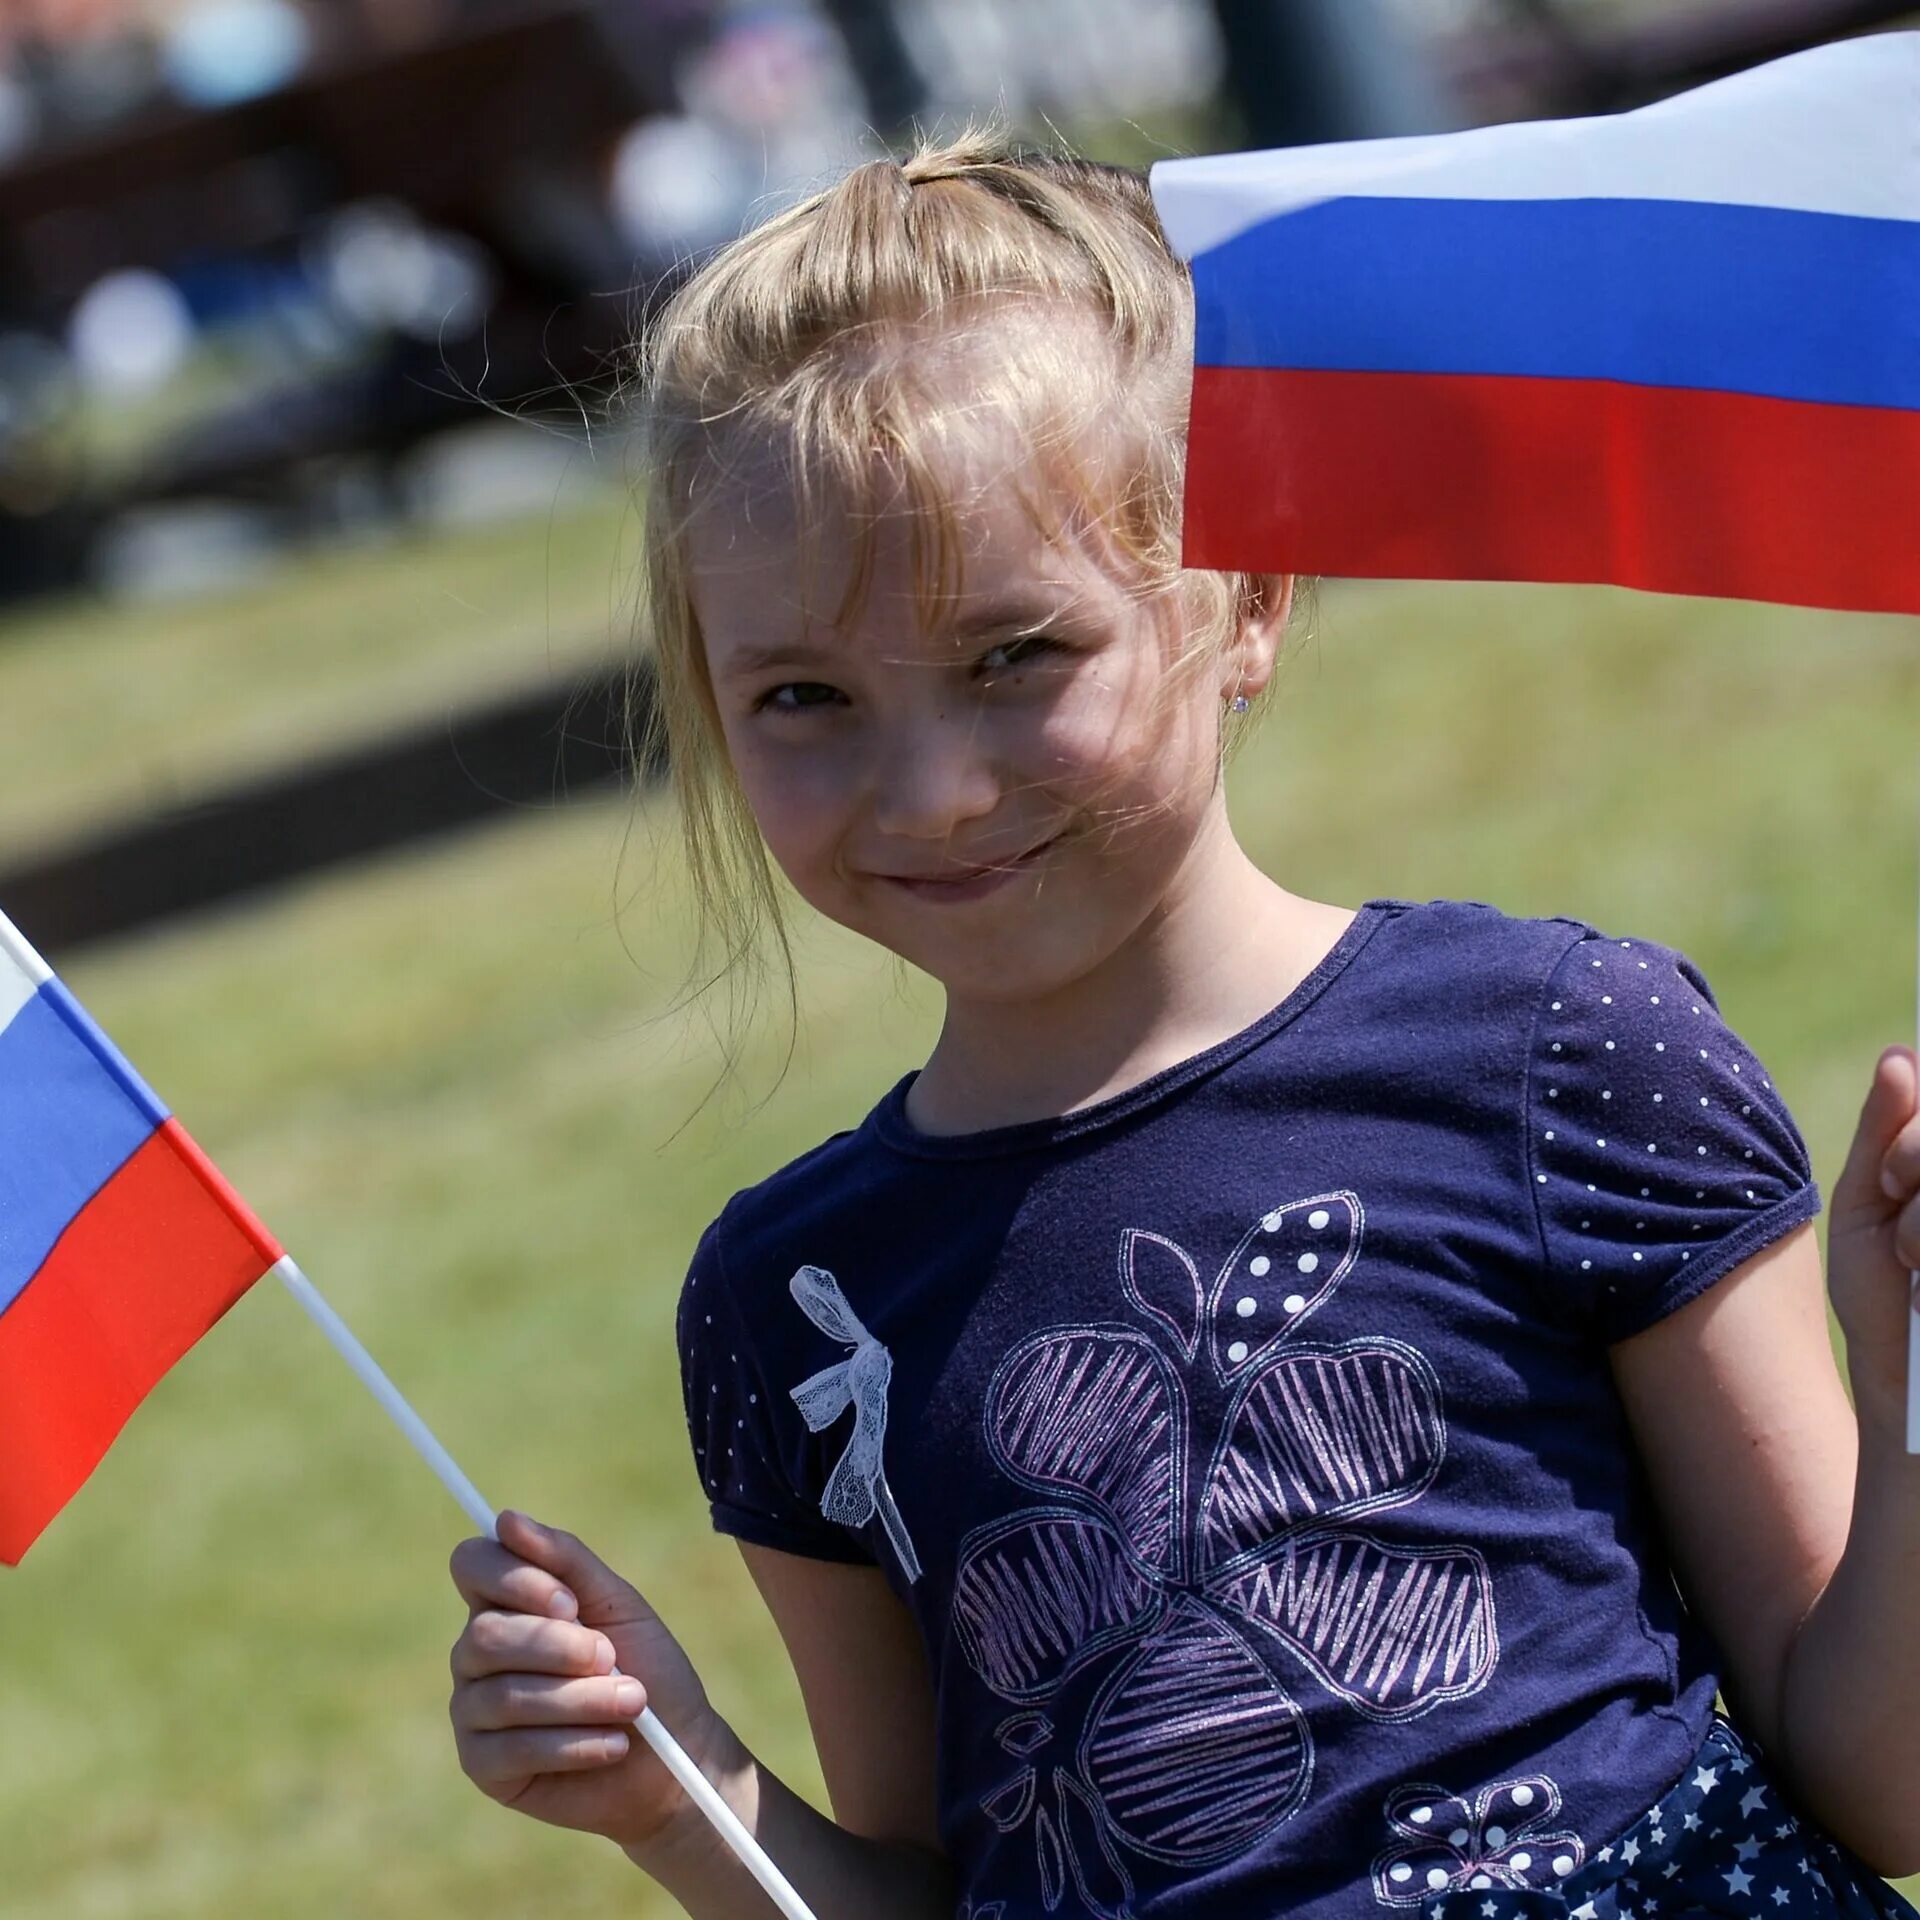 Показать фотографии флагов. Дети с флажками России. Россия для детей. Флаг России. Флаг России для детей.